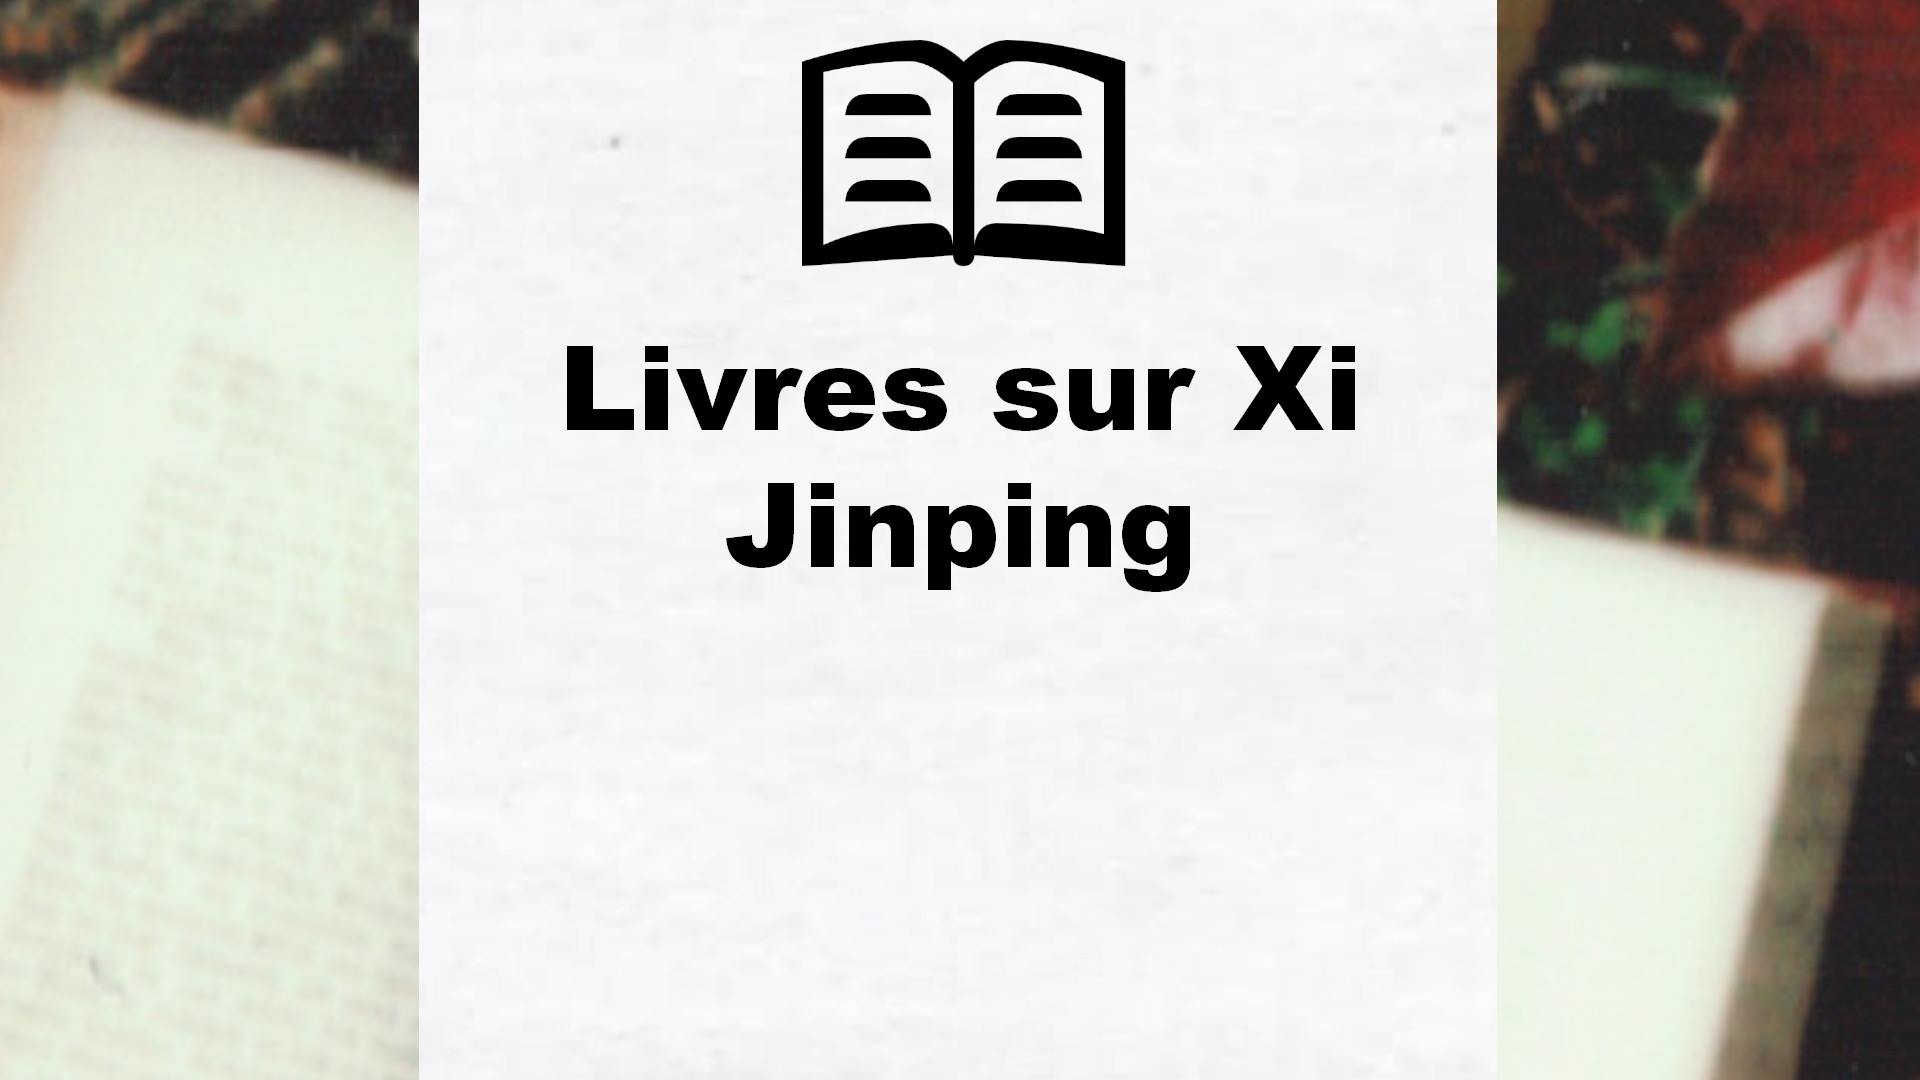 Livres sur Xi Jinping